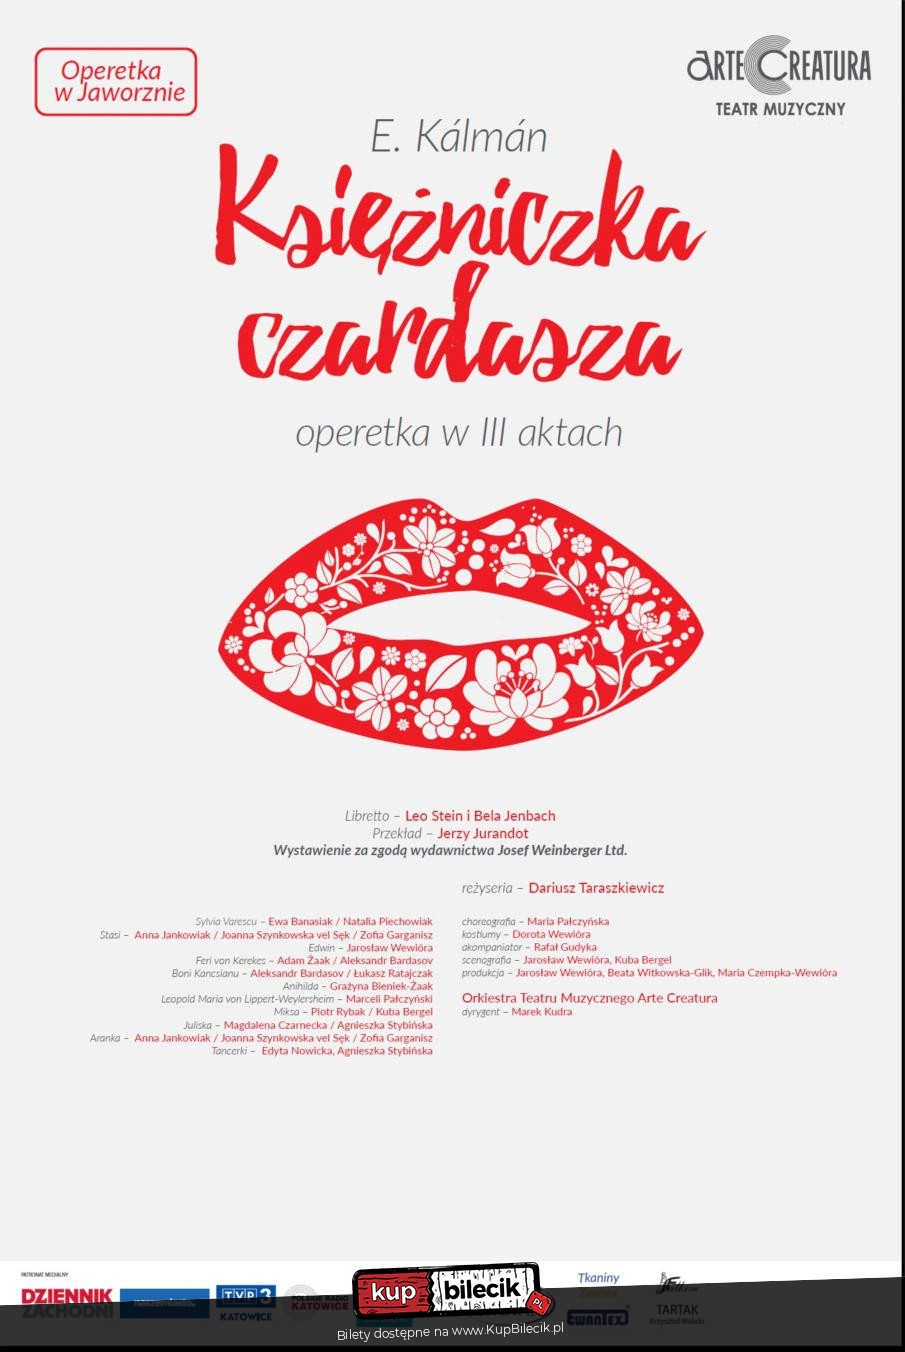 Plakat Księżniczka czardasza I.Kalman operetka - Arte Creatura Teatr Muzyczny 134414